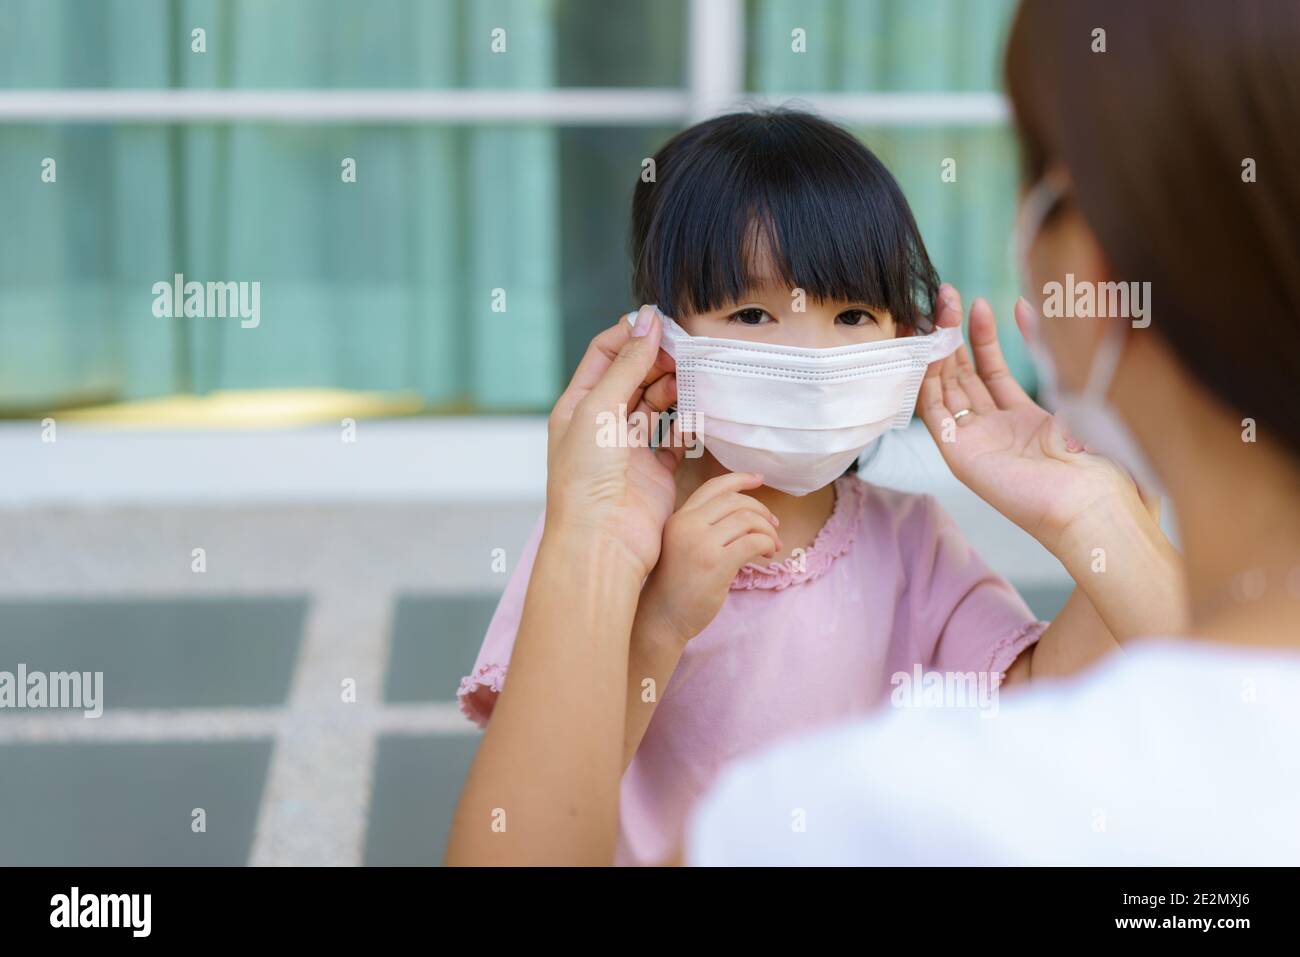 La mère asiatique aide sa fille à porter un masque de protection pour protéger la situation d'épidémie de coronavirus Covid-19 avant d'aller à l'école. Préparez-vous à l'école Banque D'Images